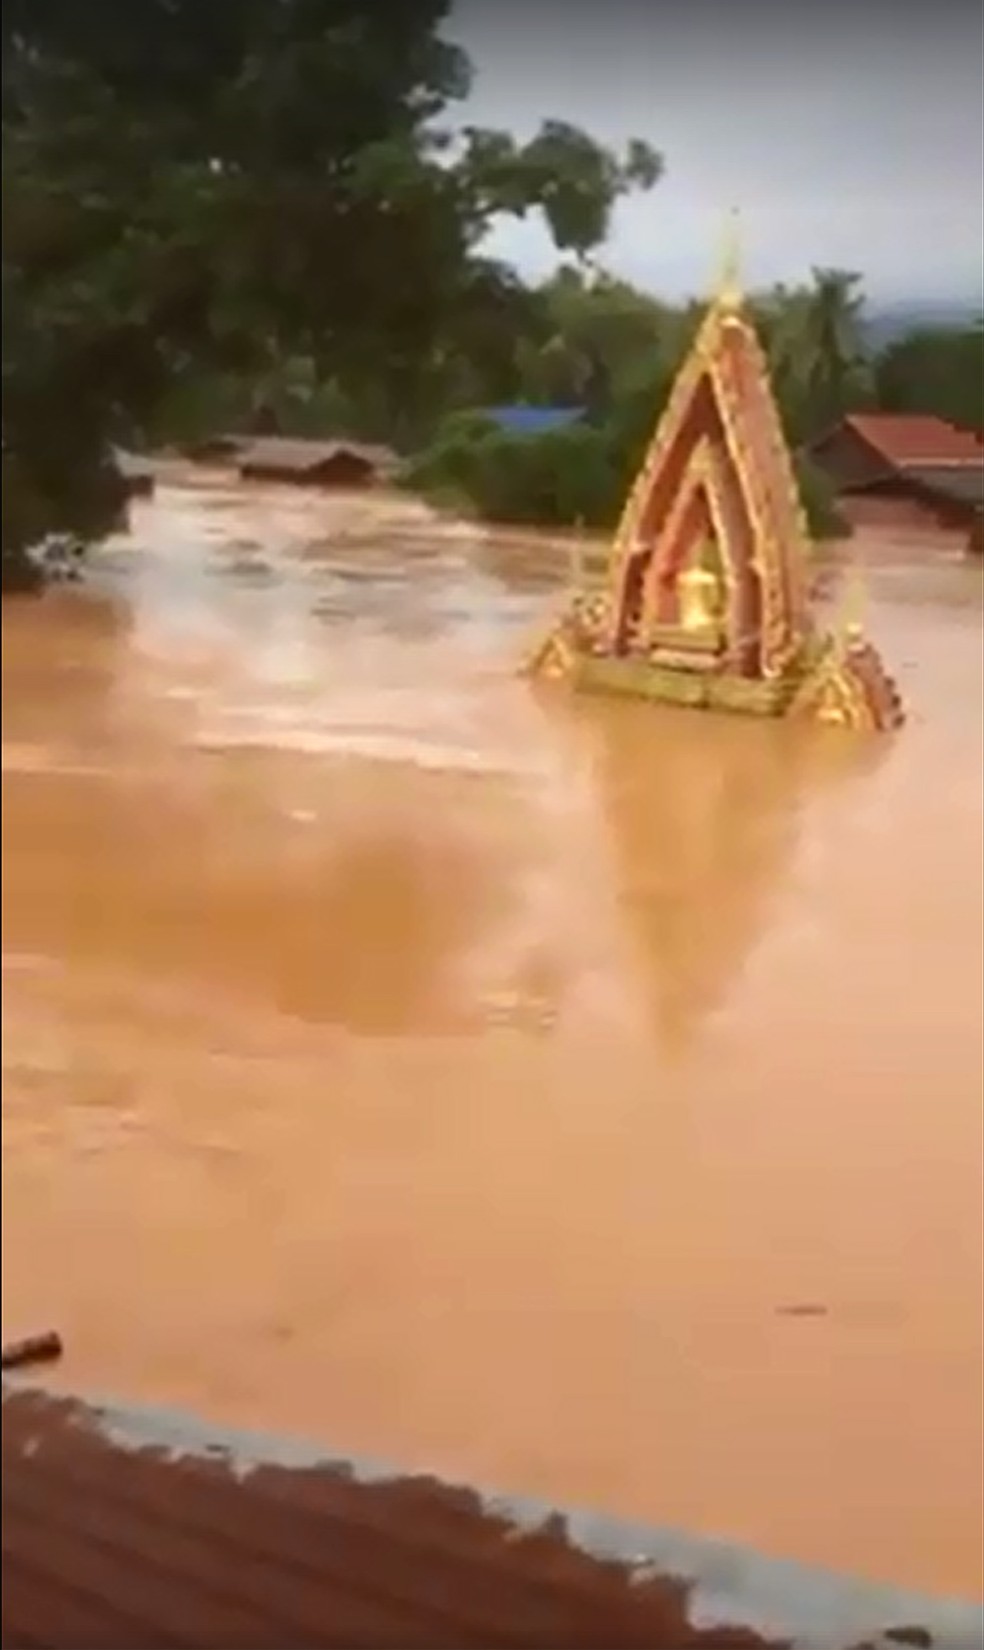 laos iii - Represa se rompe e deixa centenas de desaparecidos no Laos